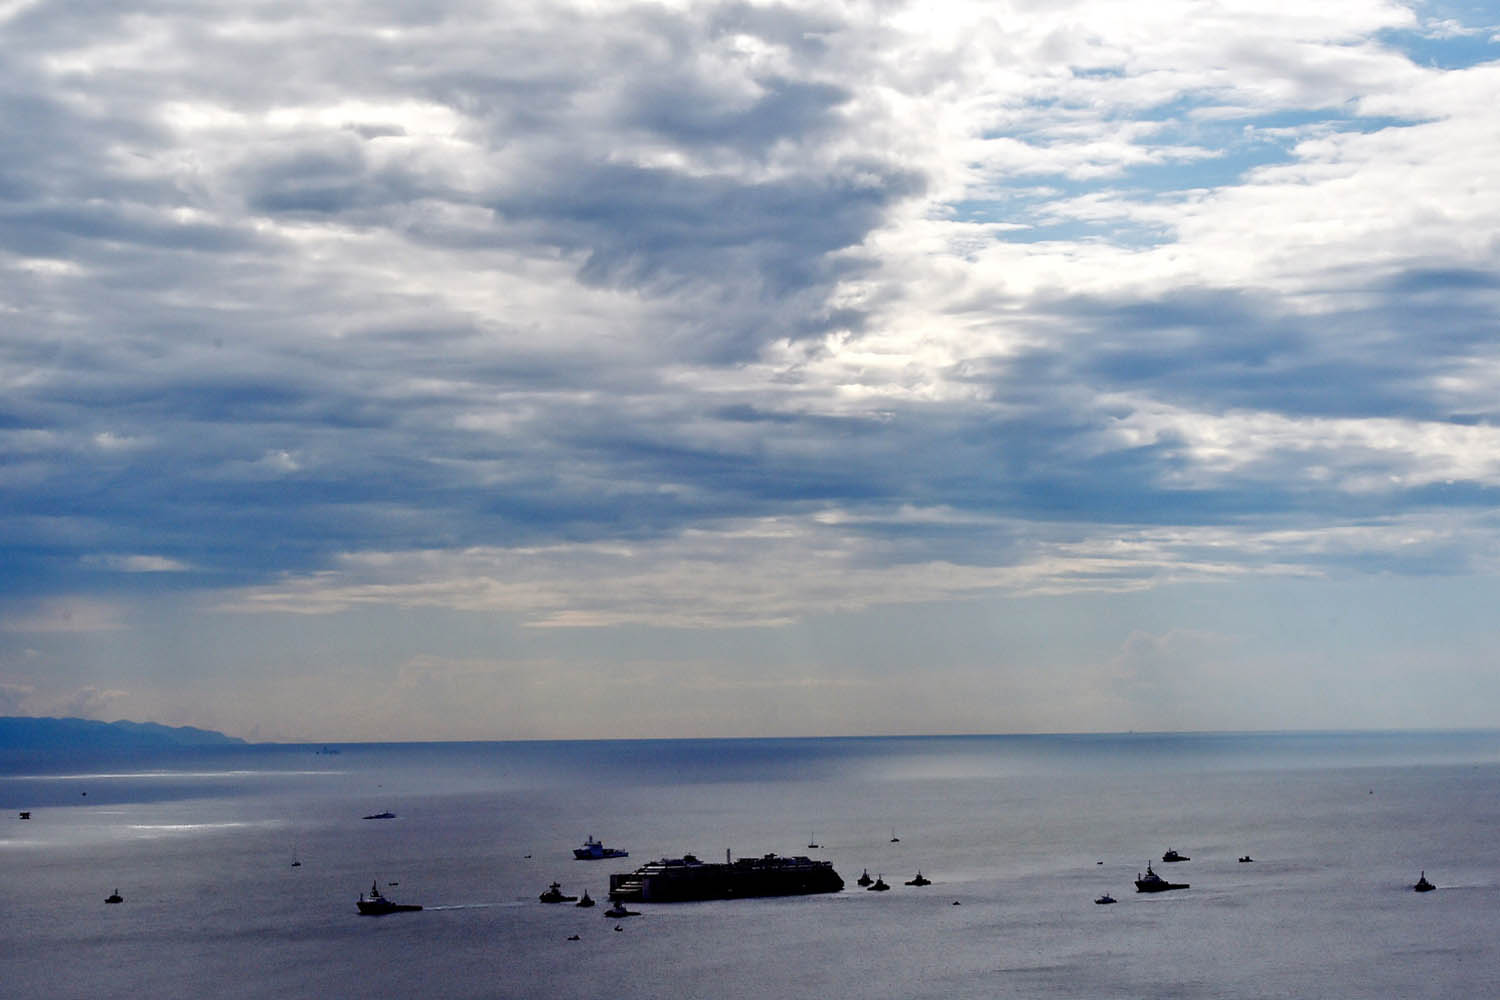 *** BESTPIX *** Costa Concordia Is Seen Near The Port Of Genoa